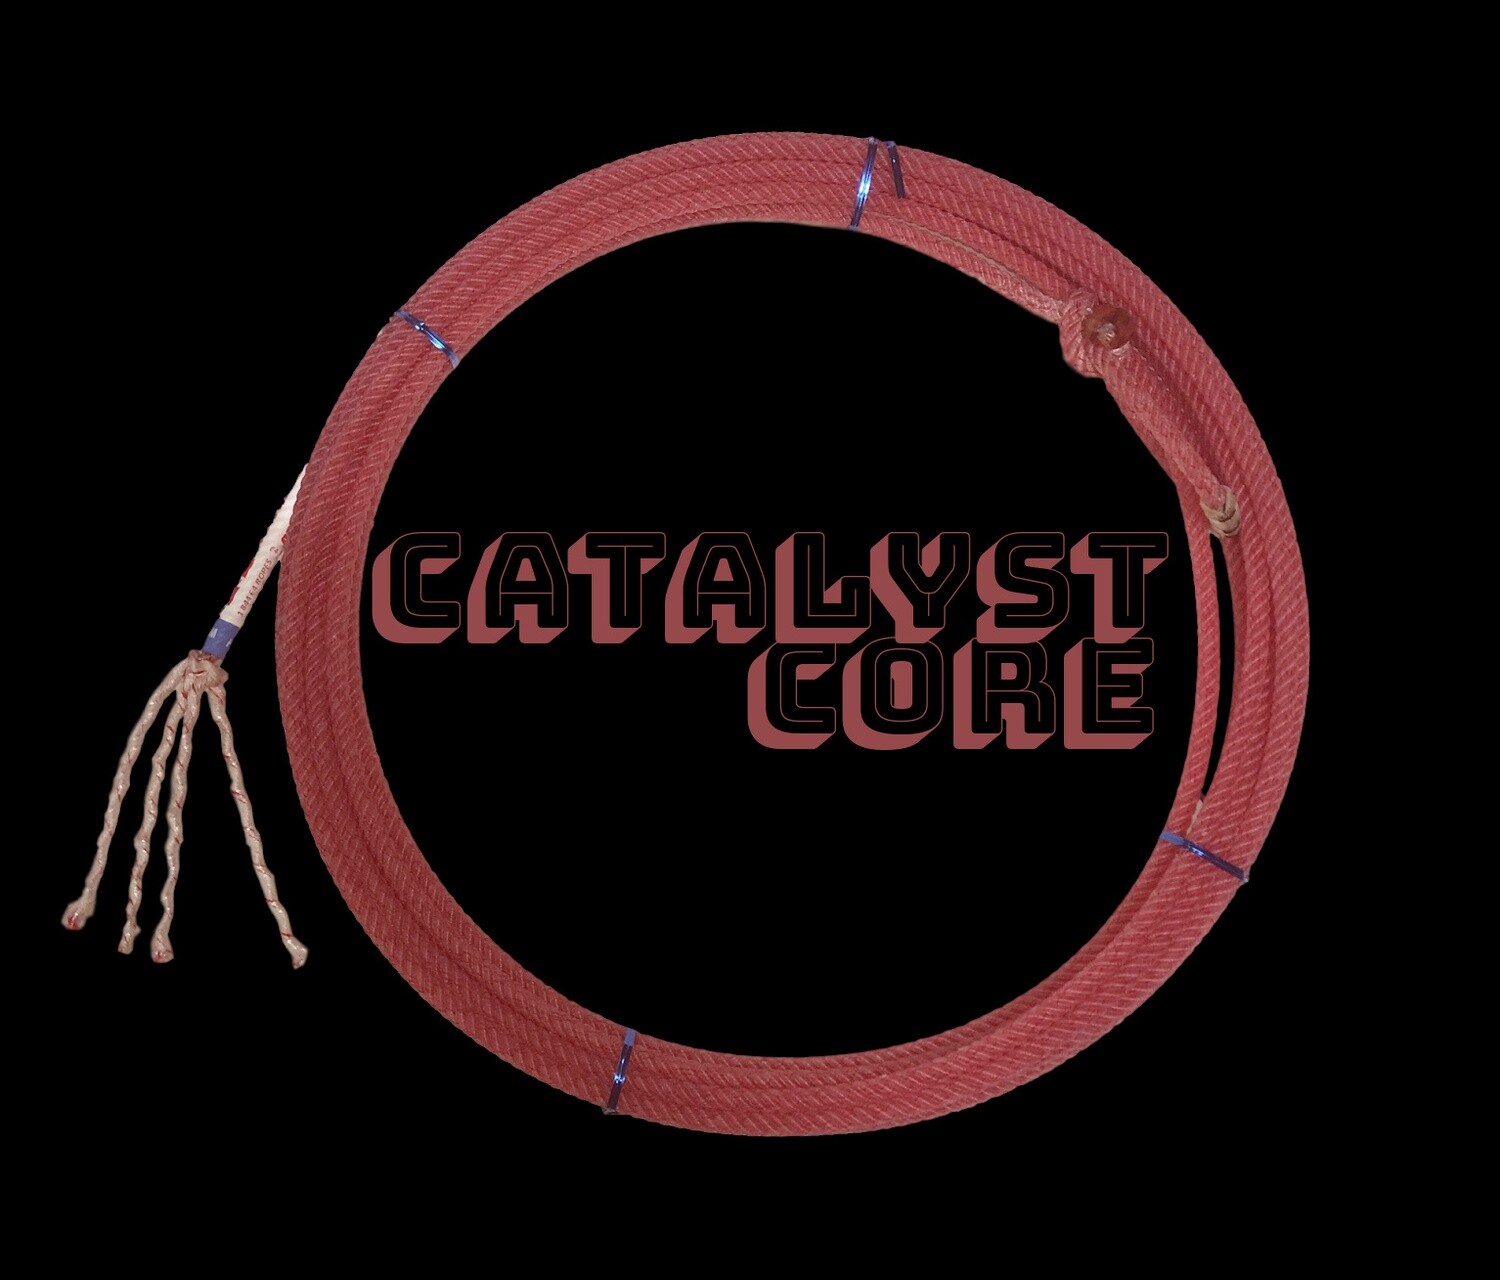 Catalyst- Heel Rope